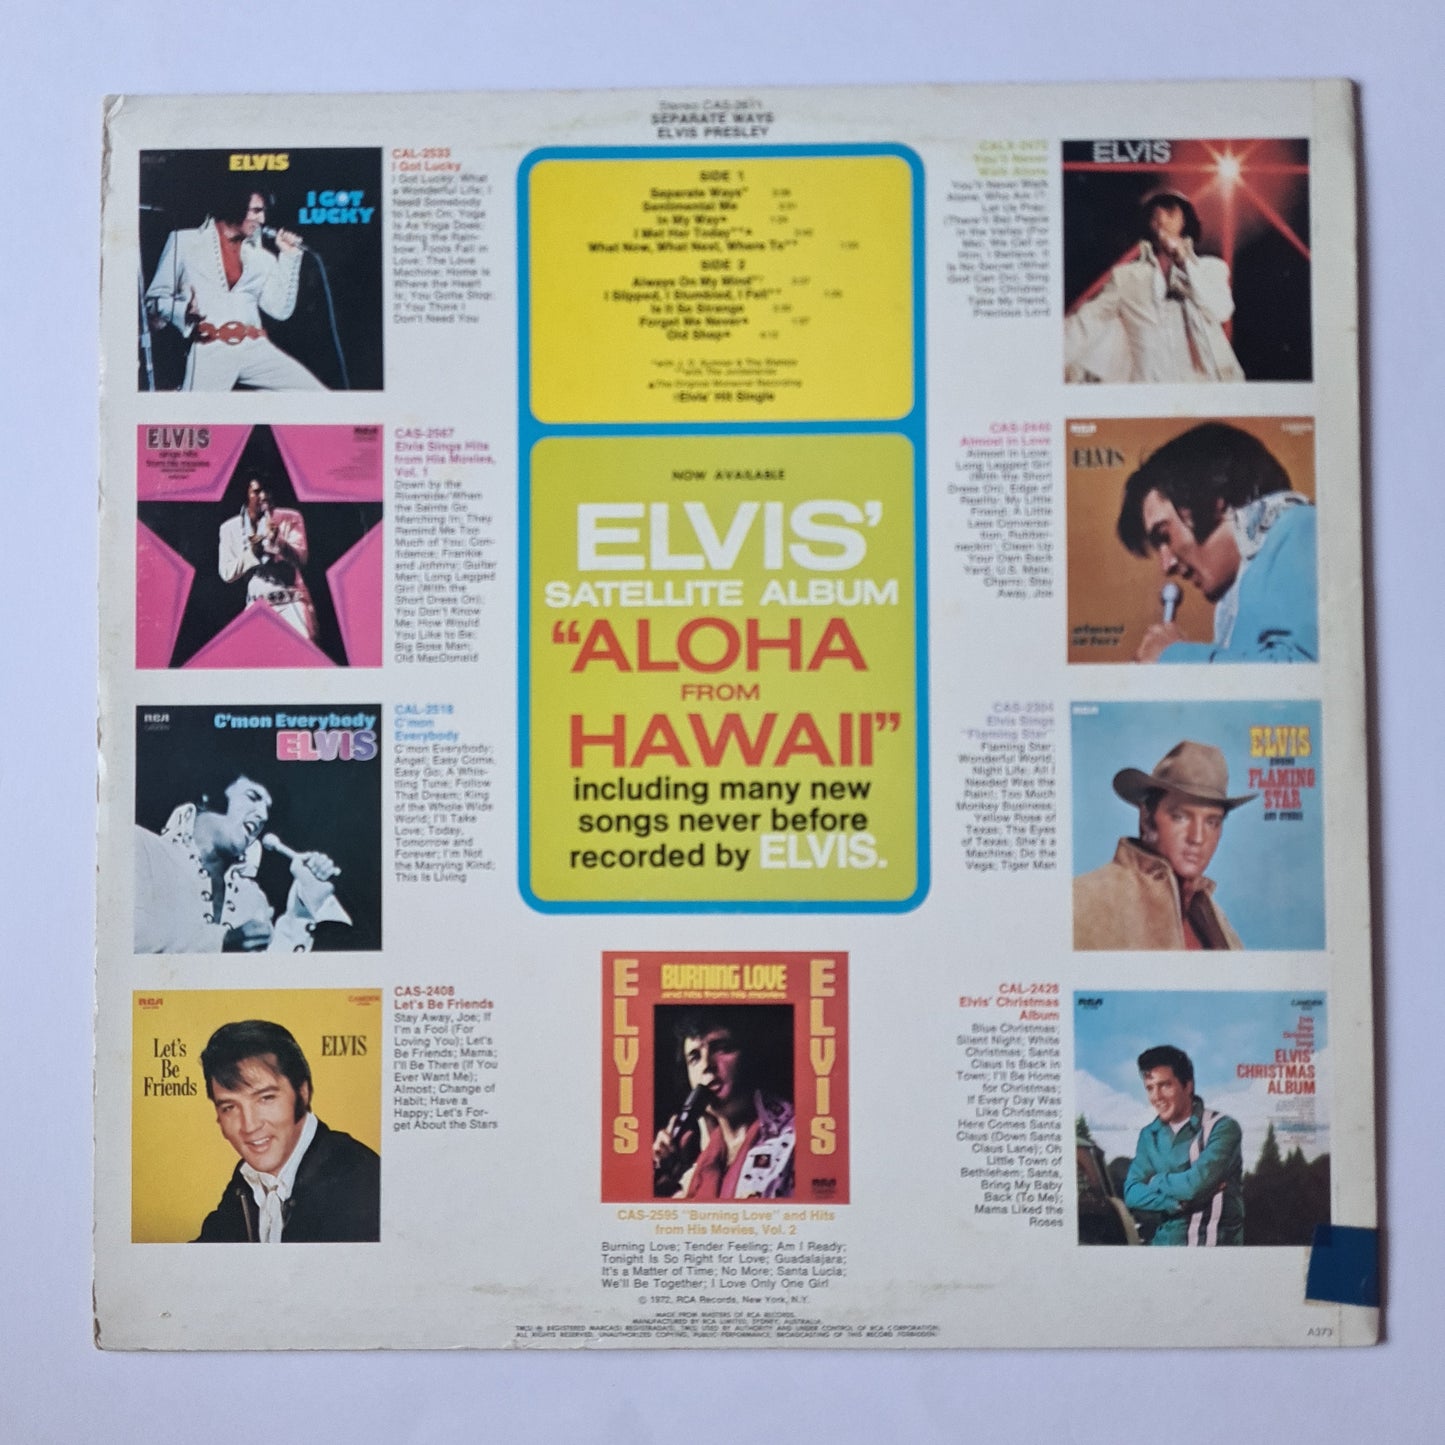 Elvis Presley – Seperate Ways - 1972 - Vinyl Record